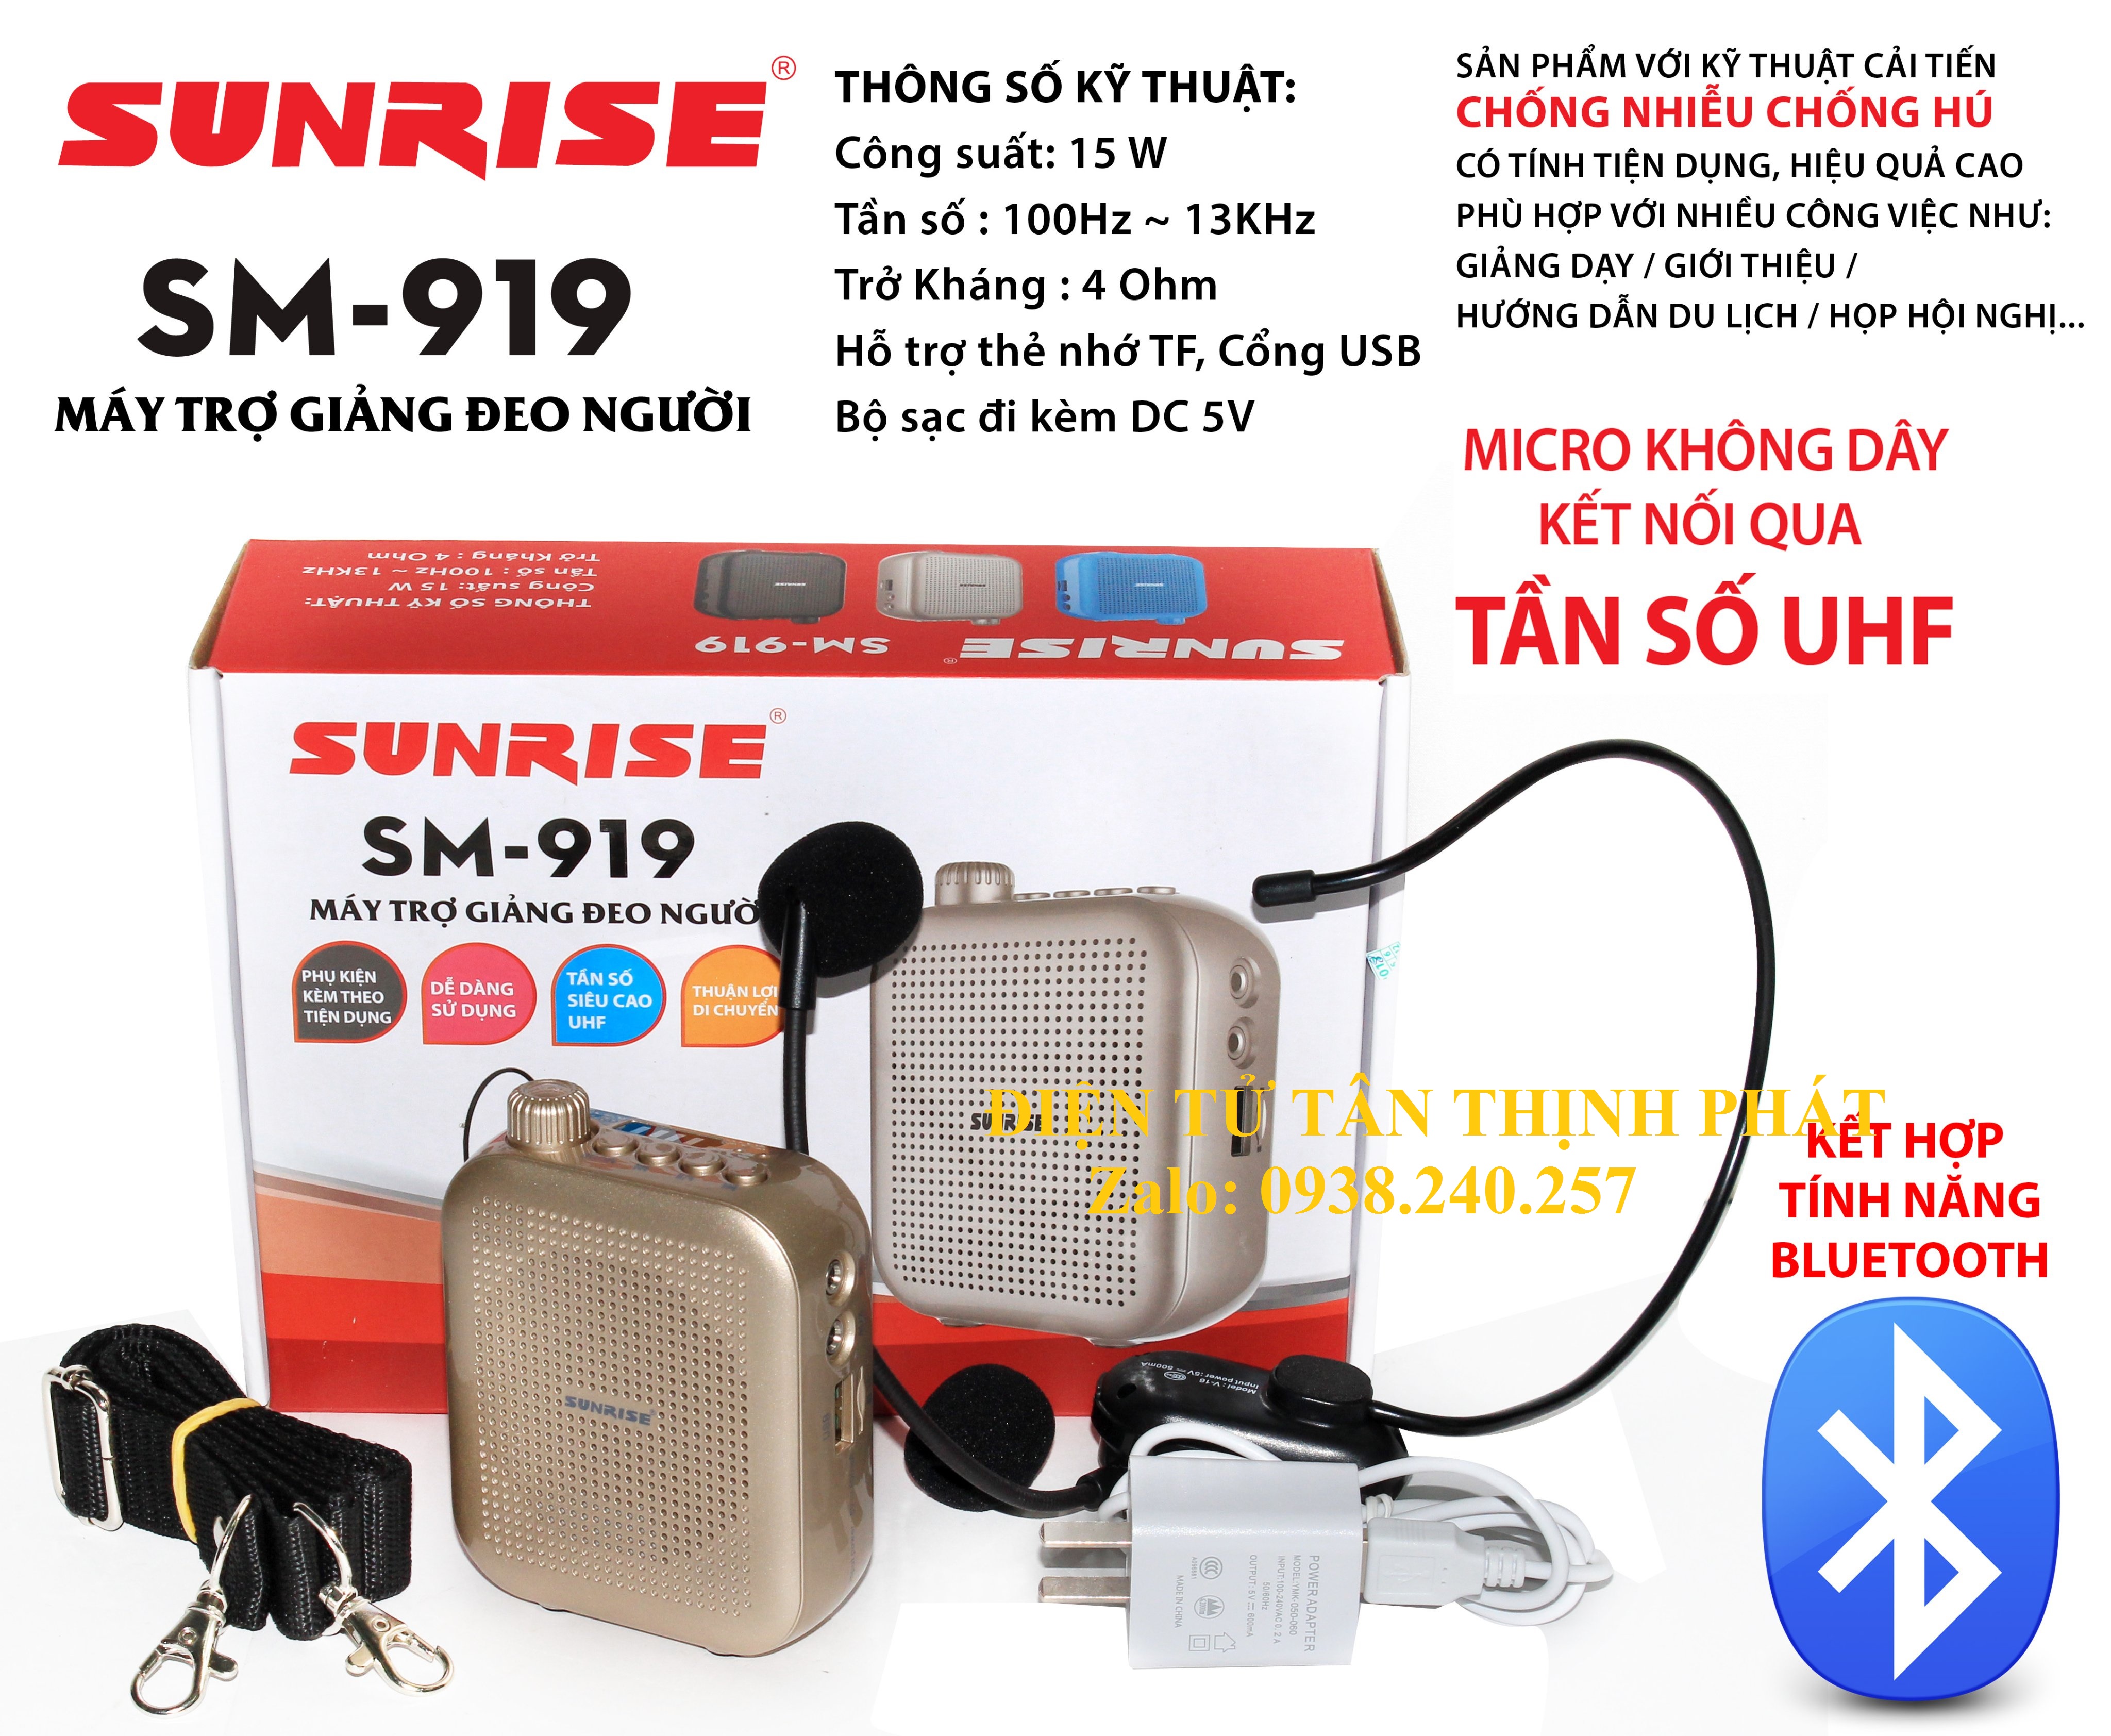 Máy trợ giảng không dây sunrise SM-919 có Bluetooth, sóng UHF, chống hú, chống nhiễu tốt